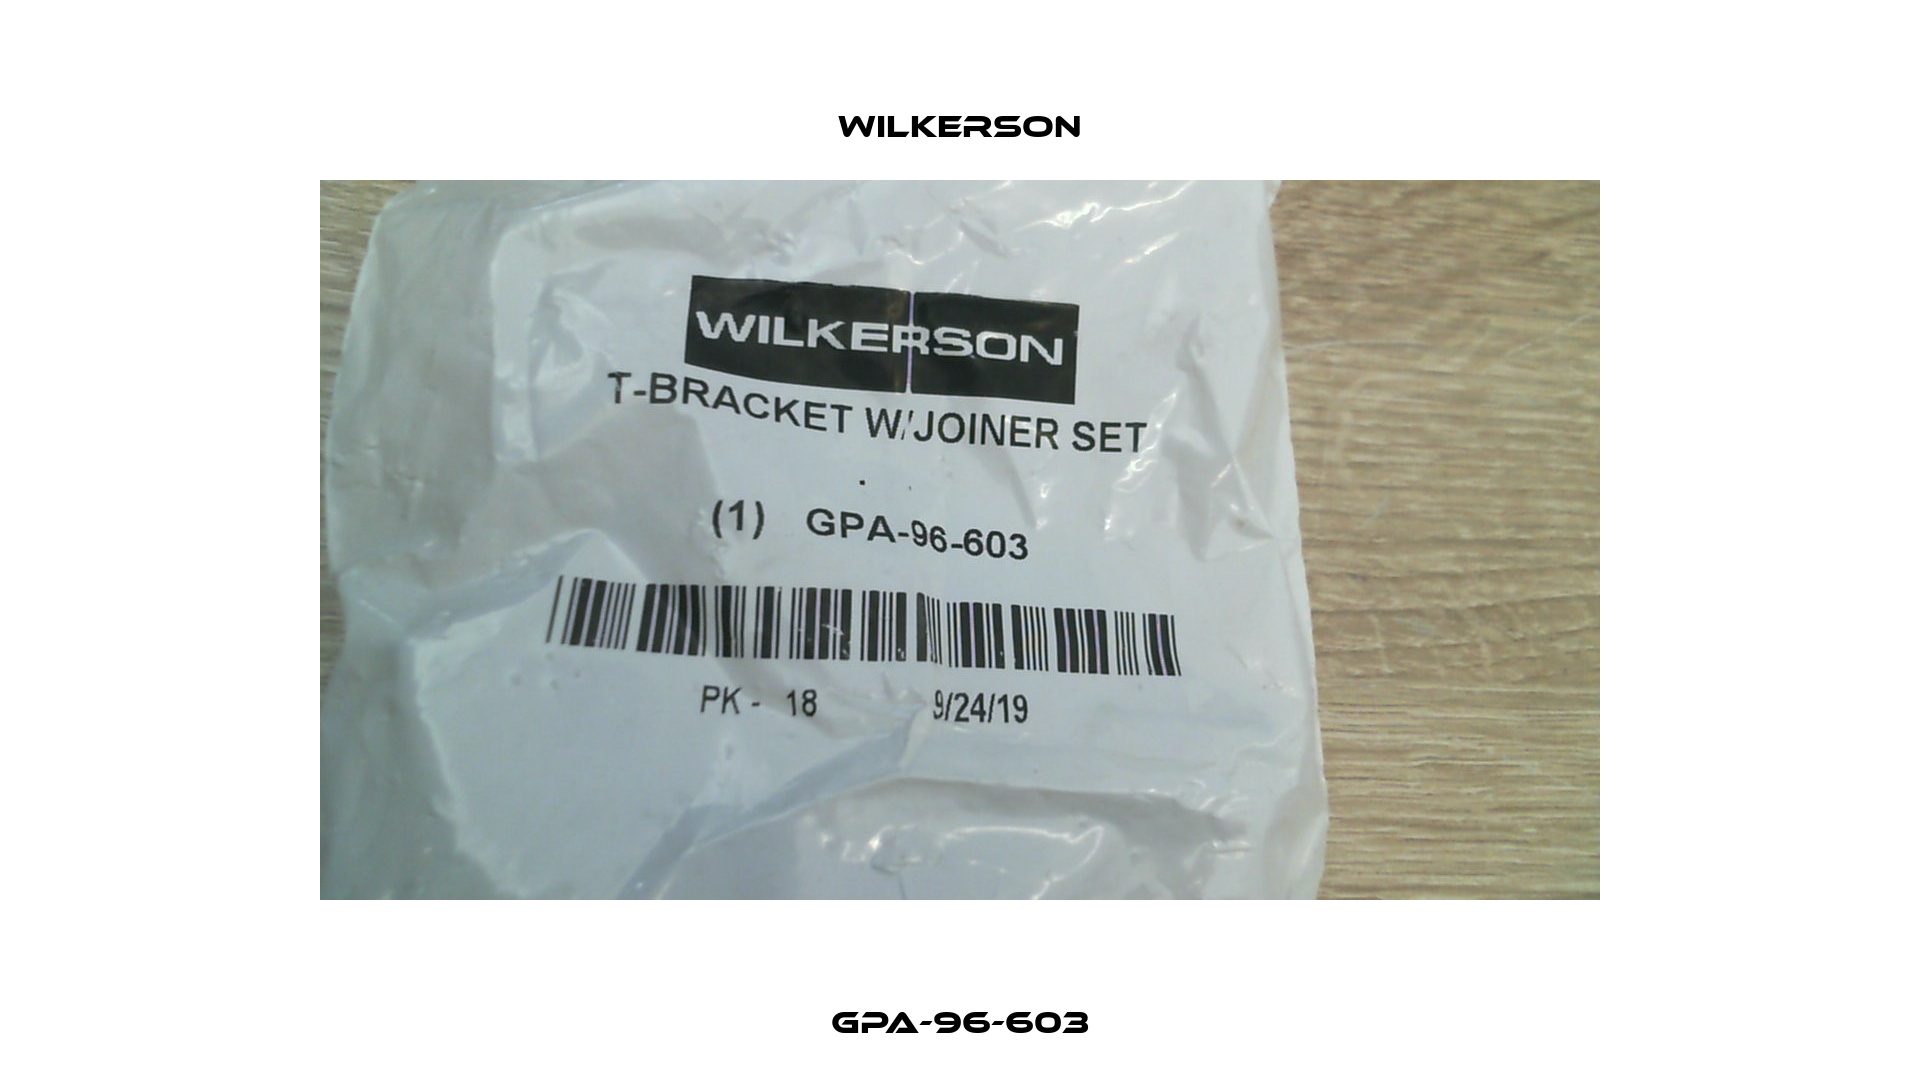 GPA-96-603 Wilkerson